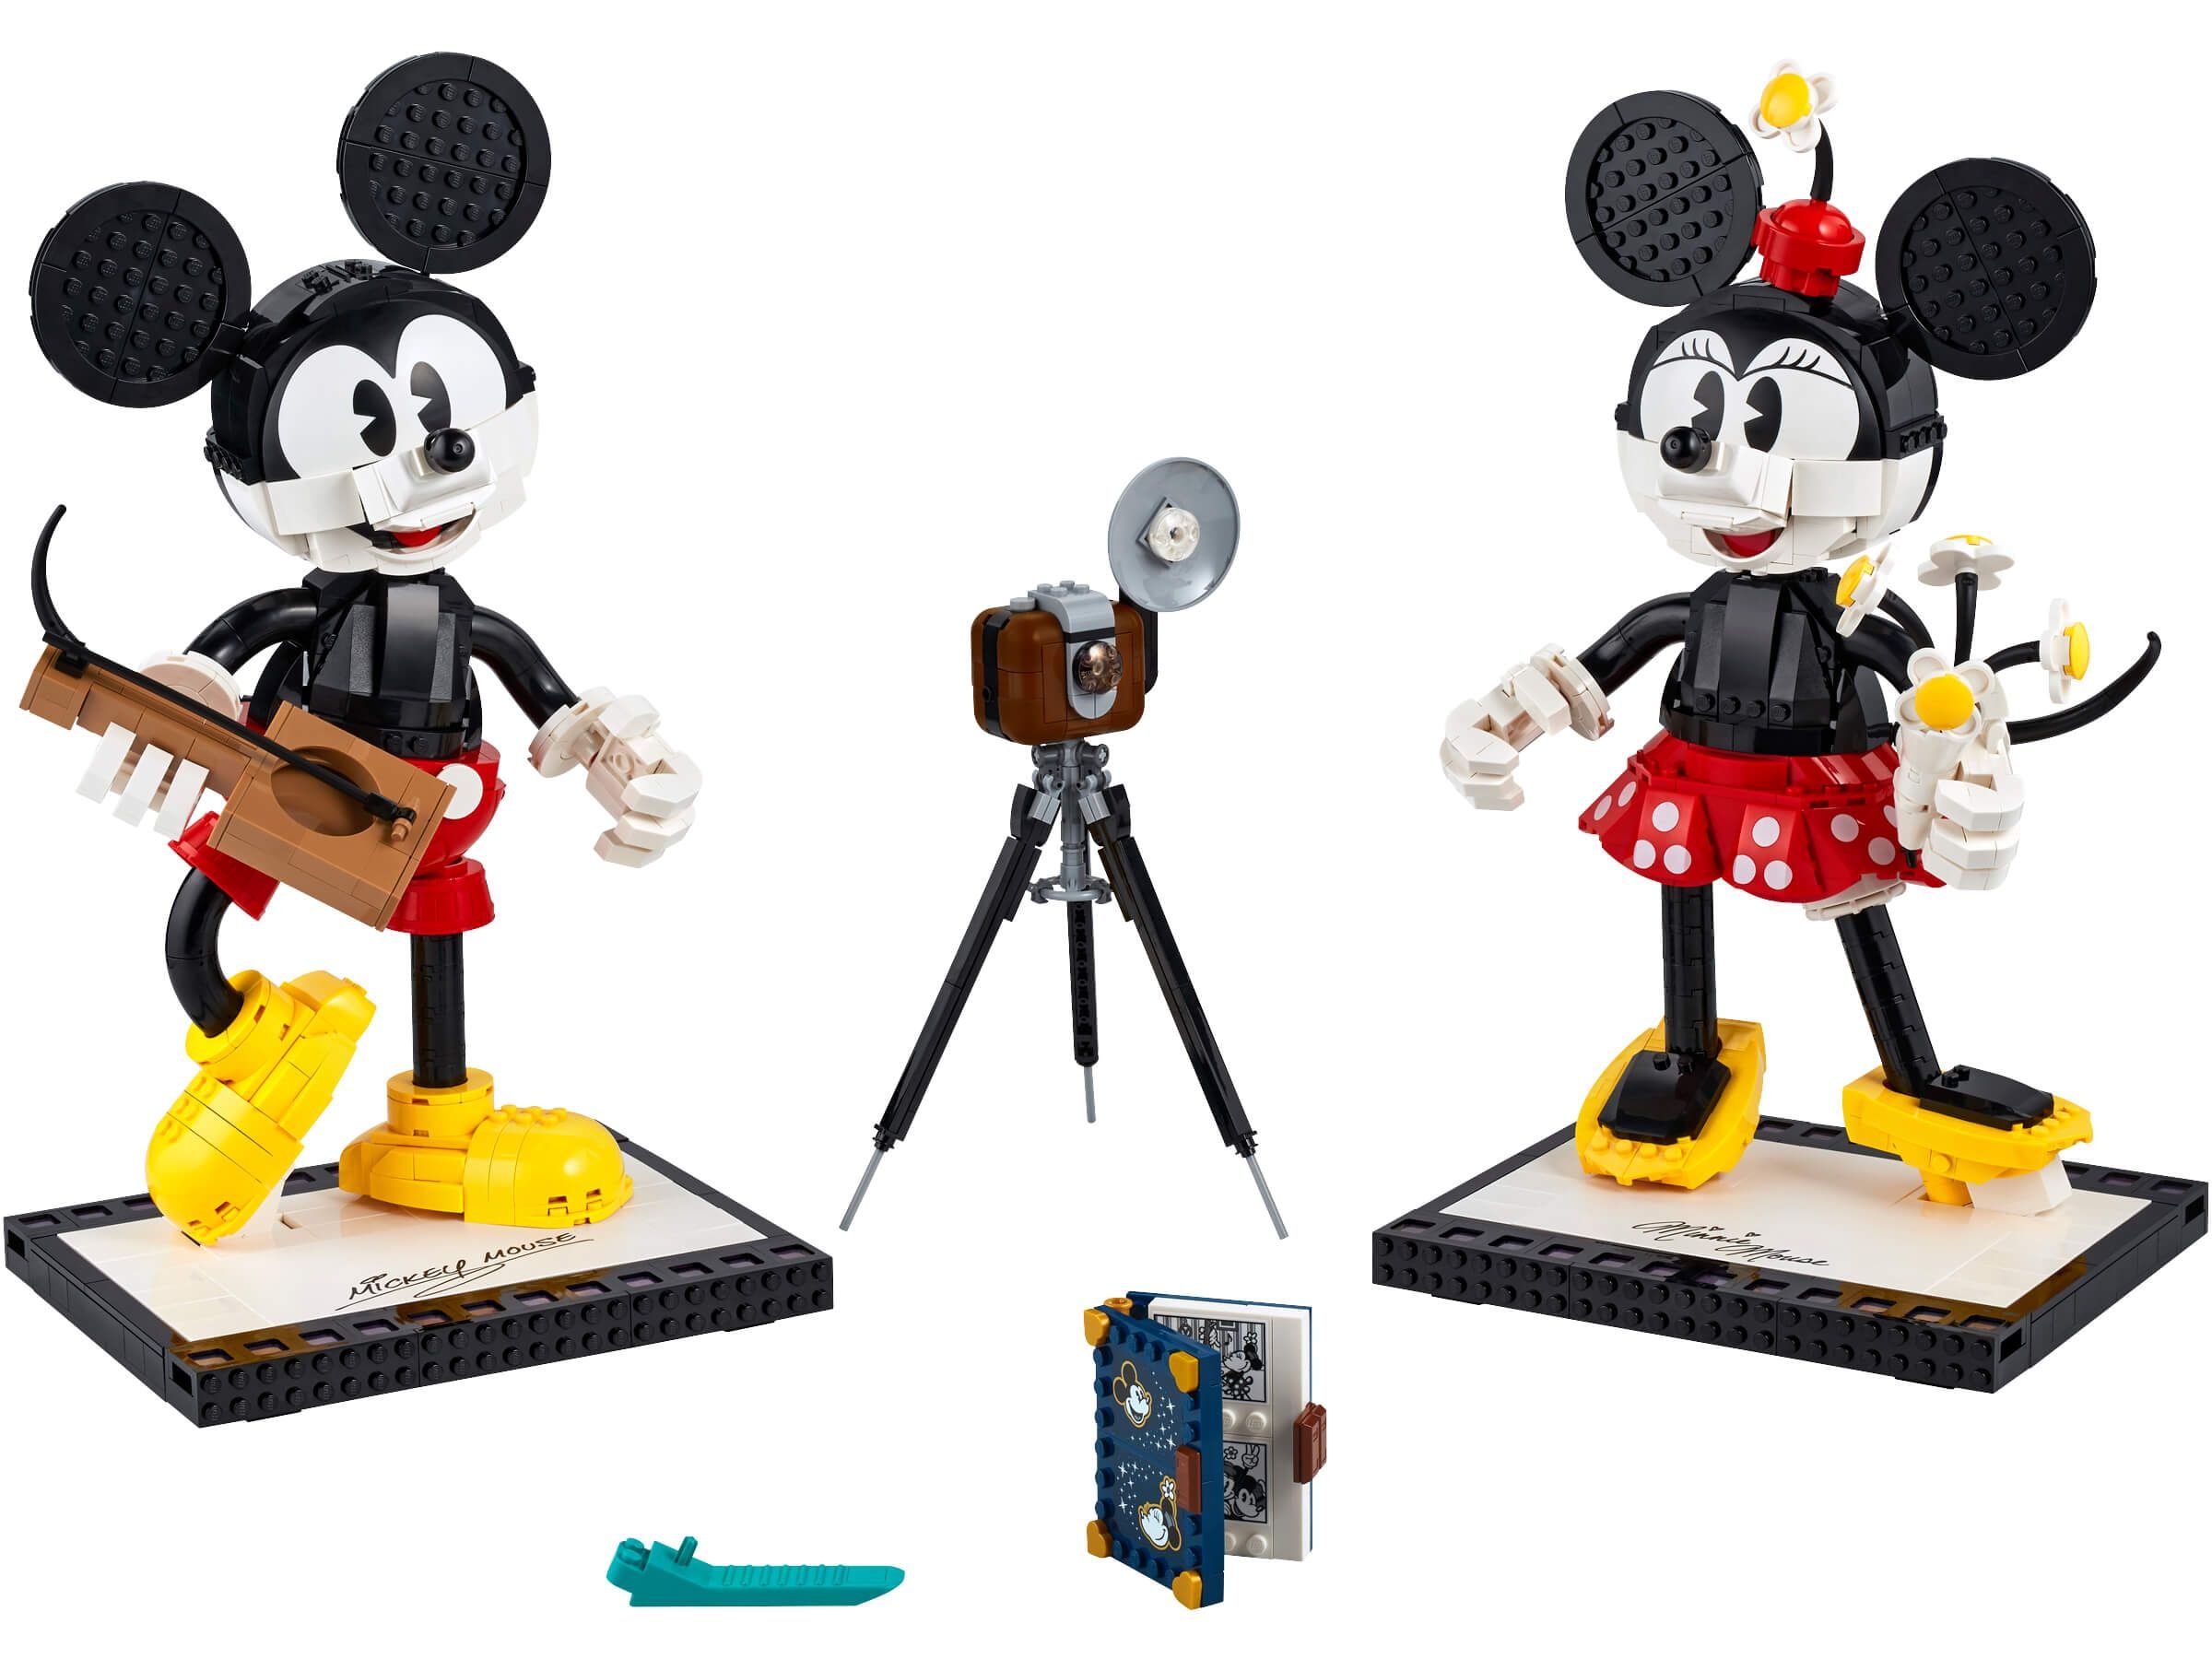 LEGO Disney 43179 Micky Maus und Minnie Maus LEGO_43179_Prod_2400.jpg